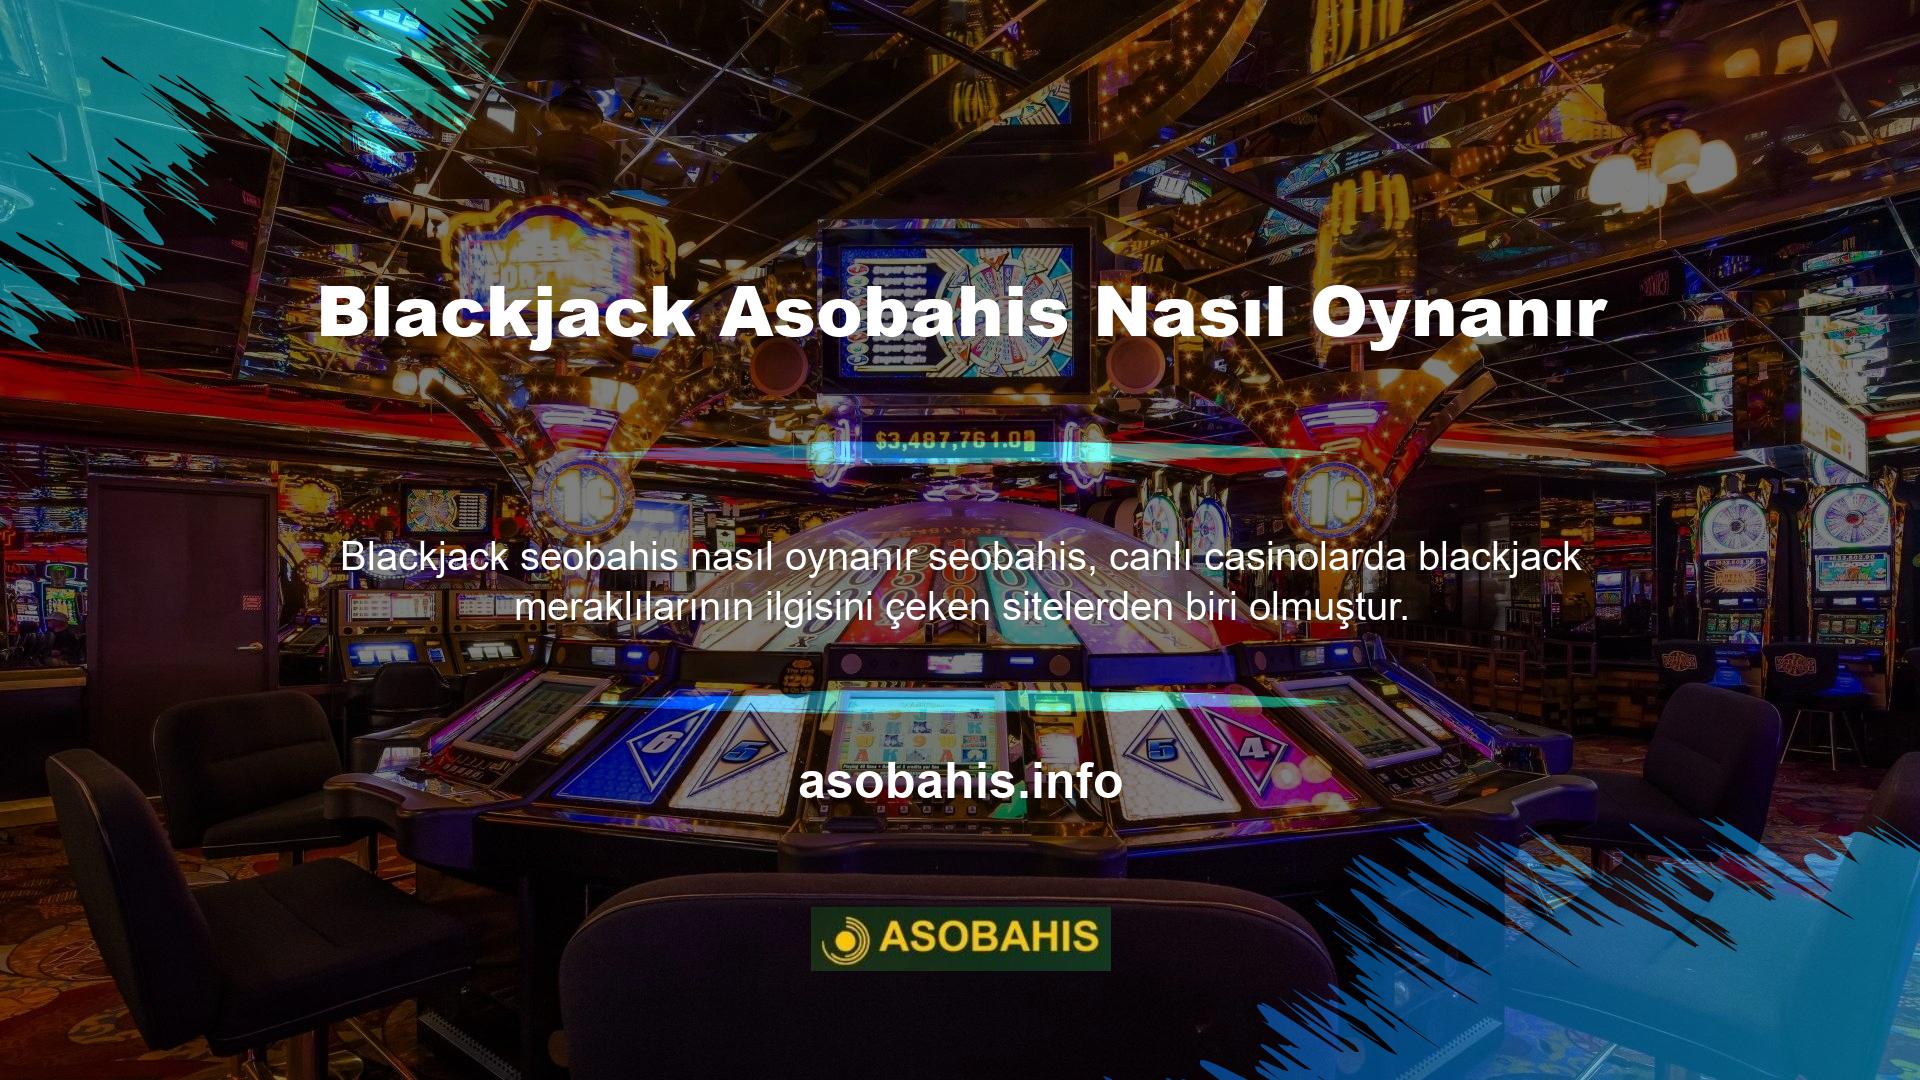 Tabii ki, müşterilerin çoğunluğu blackjack sitelerini tercih ettiklerini söylüyor